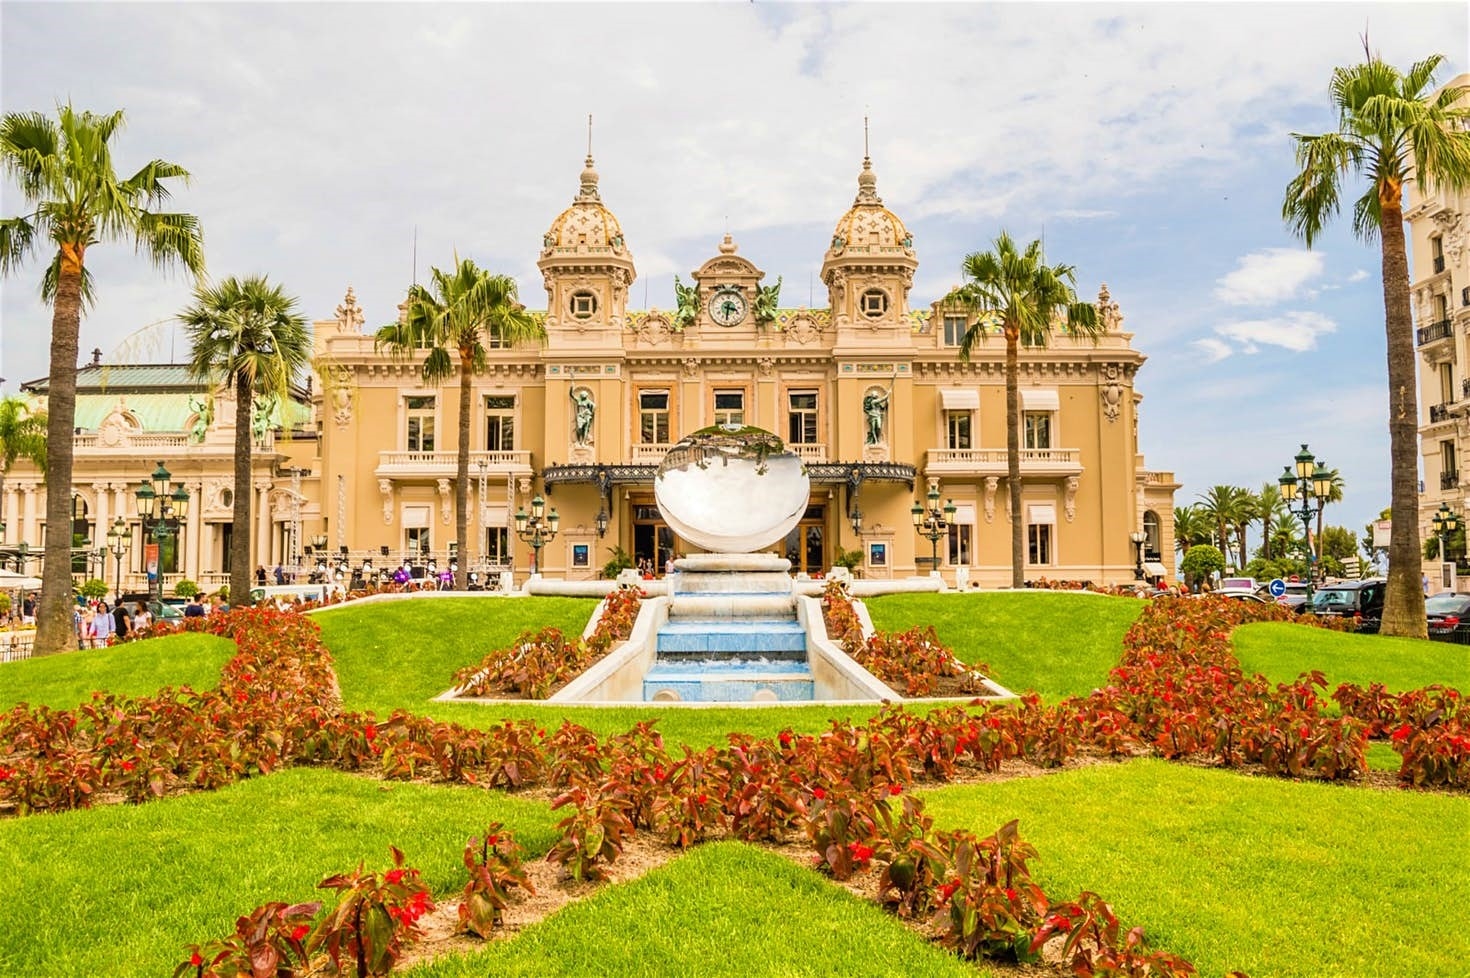  Du lịch Monaco – điểm đến của những người giàu có và nổi tiếng